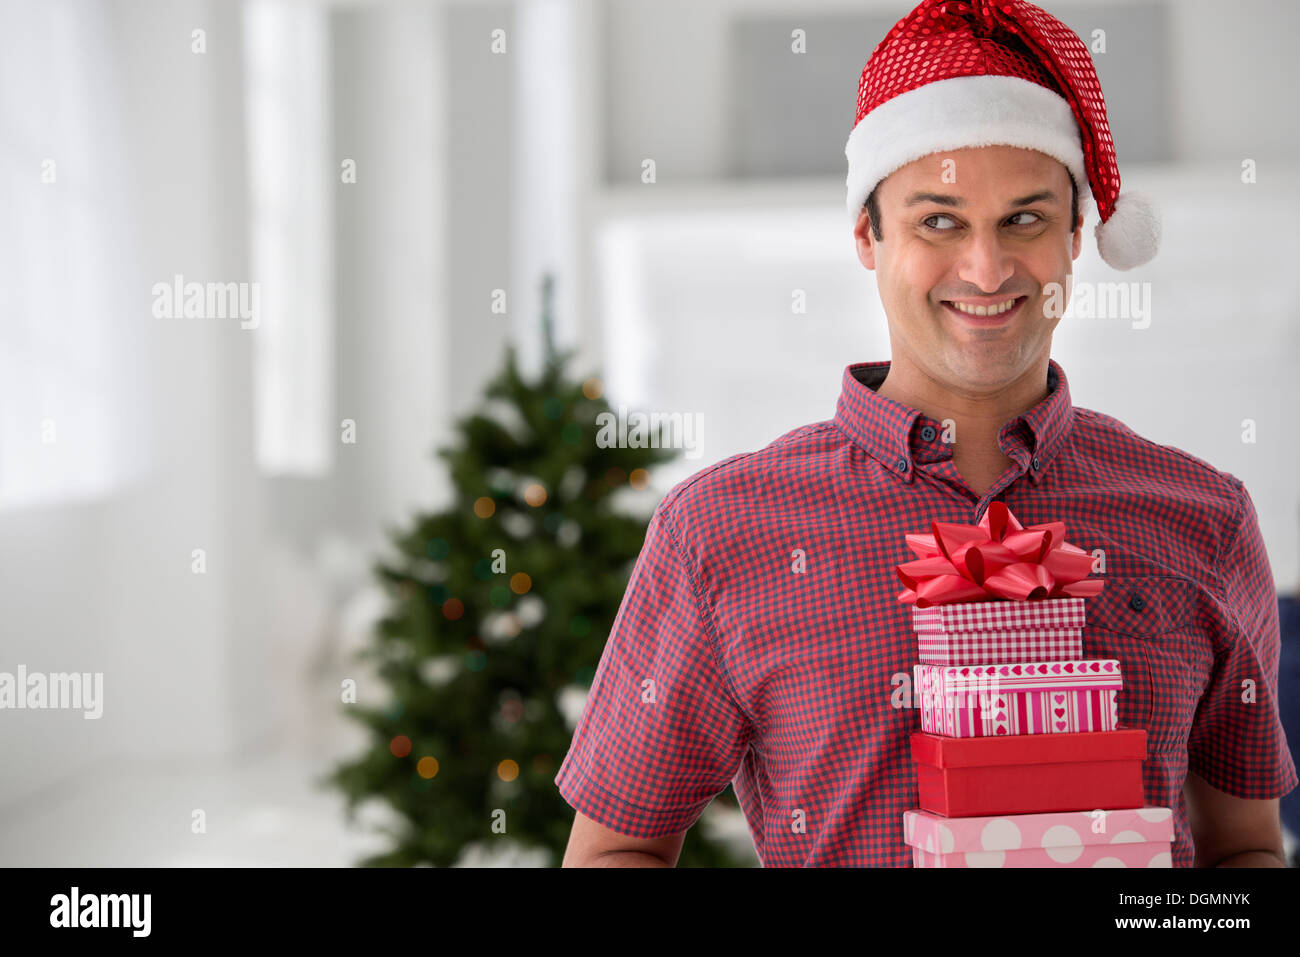 L'intérieur du bureau. La célébration de Noël. Un homme dans un chapeau de Père Noël tenant une pile de cadeaux. Arbre de Noël décoré. Banque D'Images